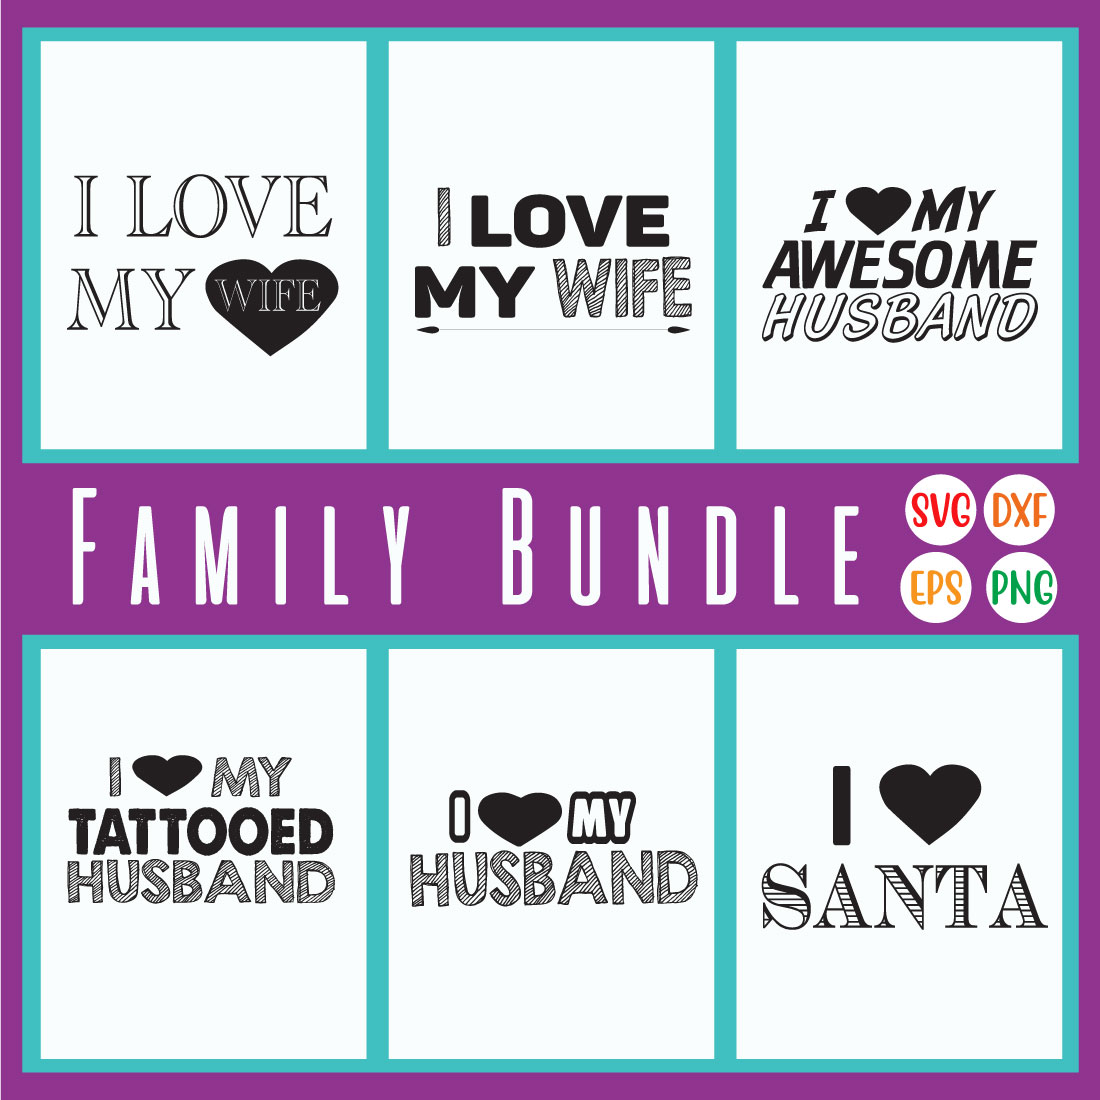 Family T-shirt Designs Bundle Vol16 cover image.